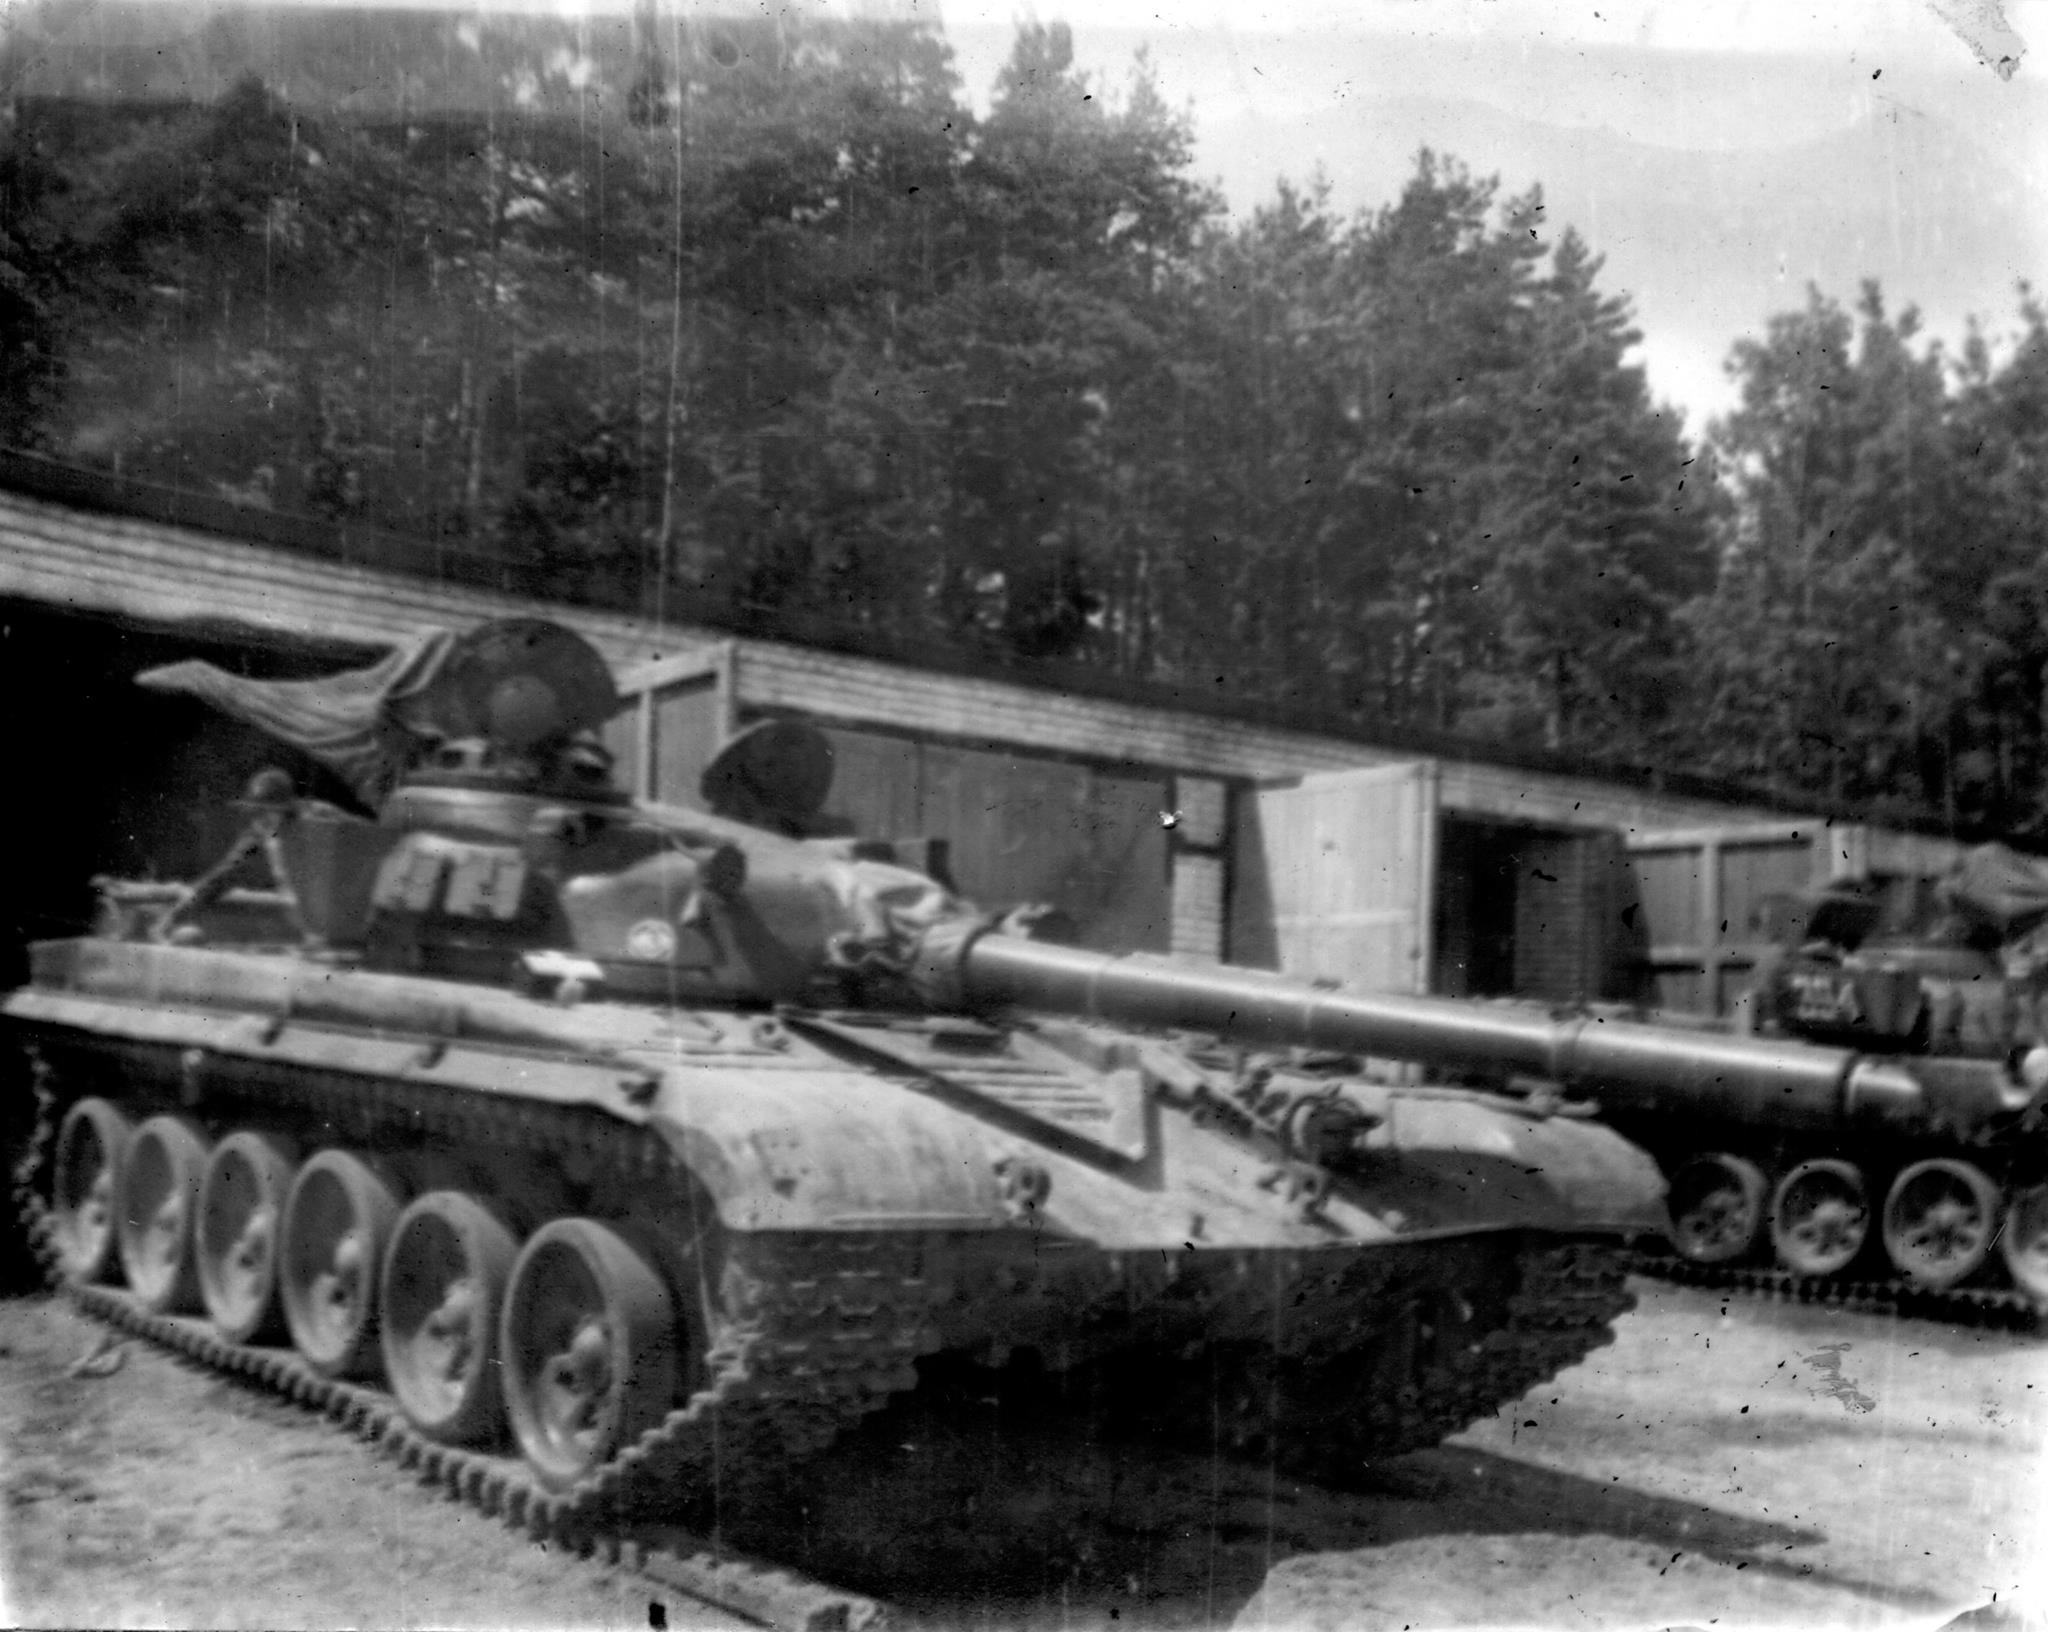 Soviet T-72 tanks in its den